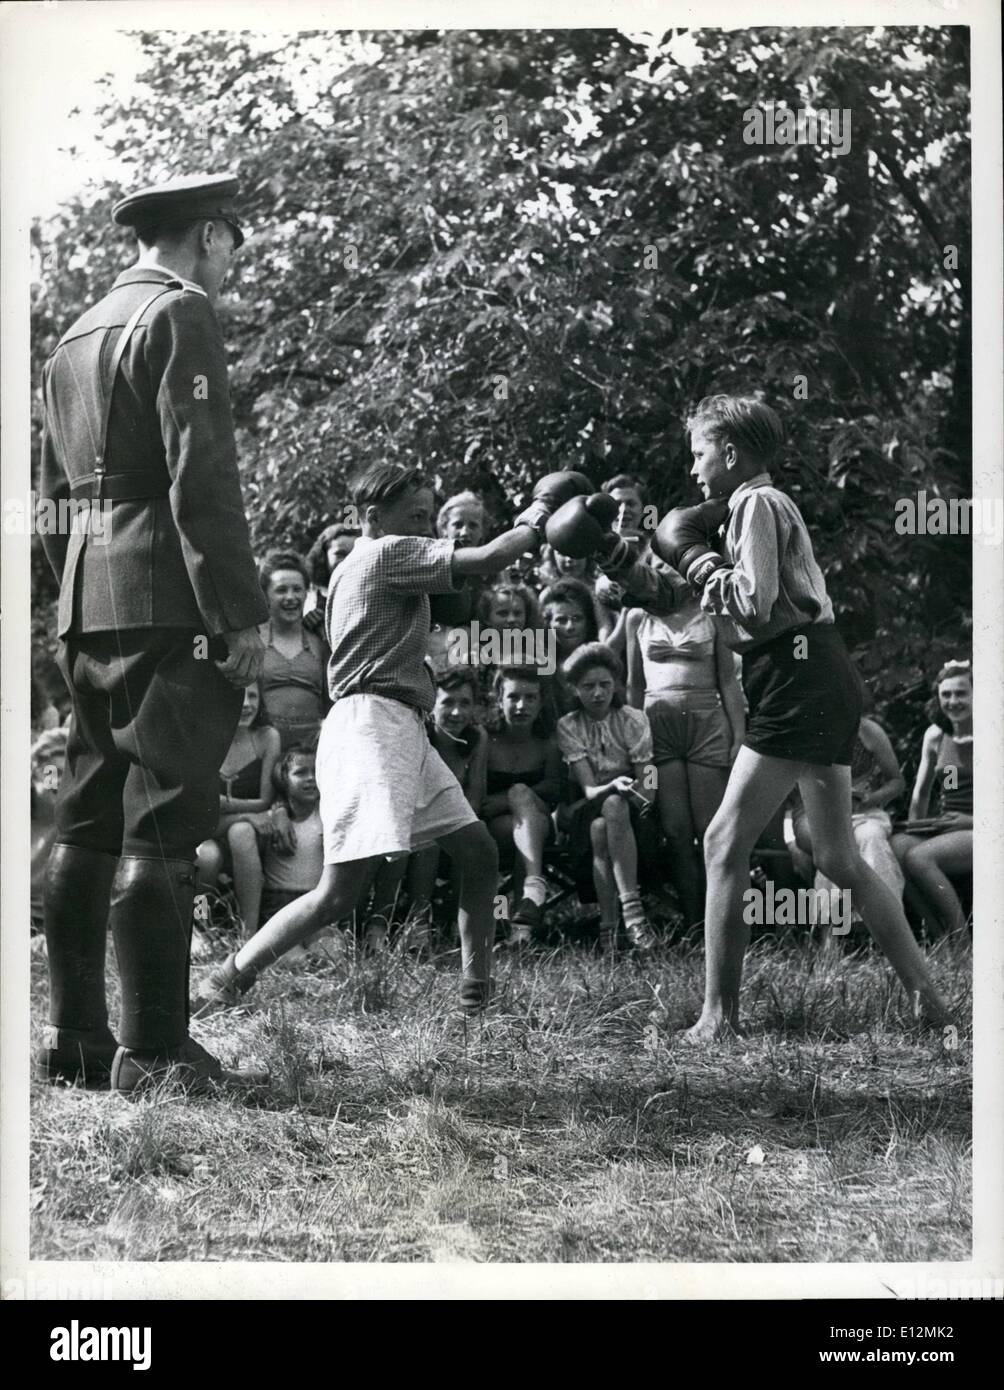 Febbraio 24, 2012 - un pubblico interessato due giovani pugili attirare una folla di ragazze, mentre il passaggio di un poliziotto tedesco si ferma a un arbitro. Foto Stock